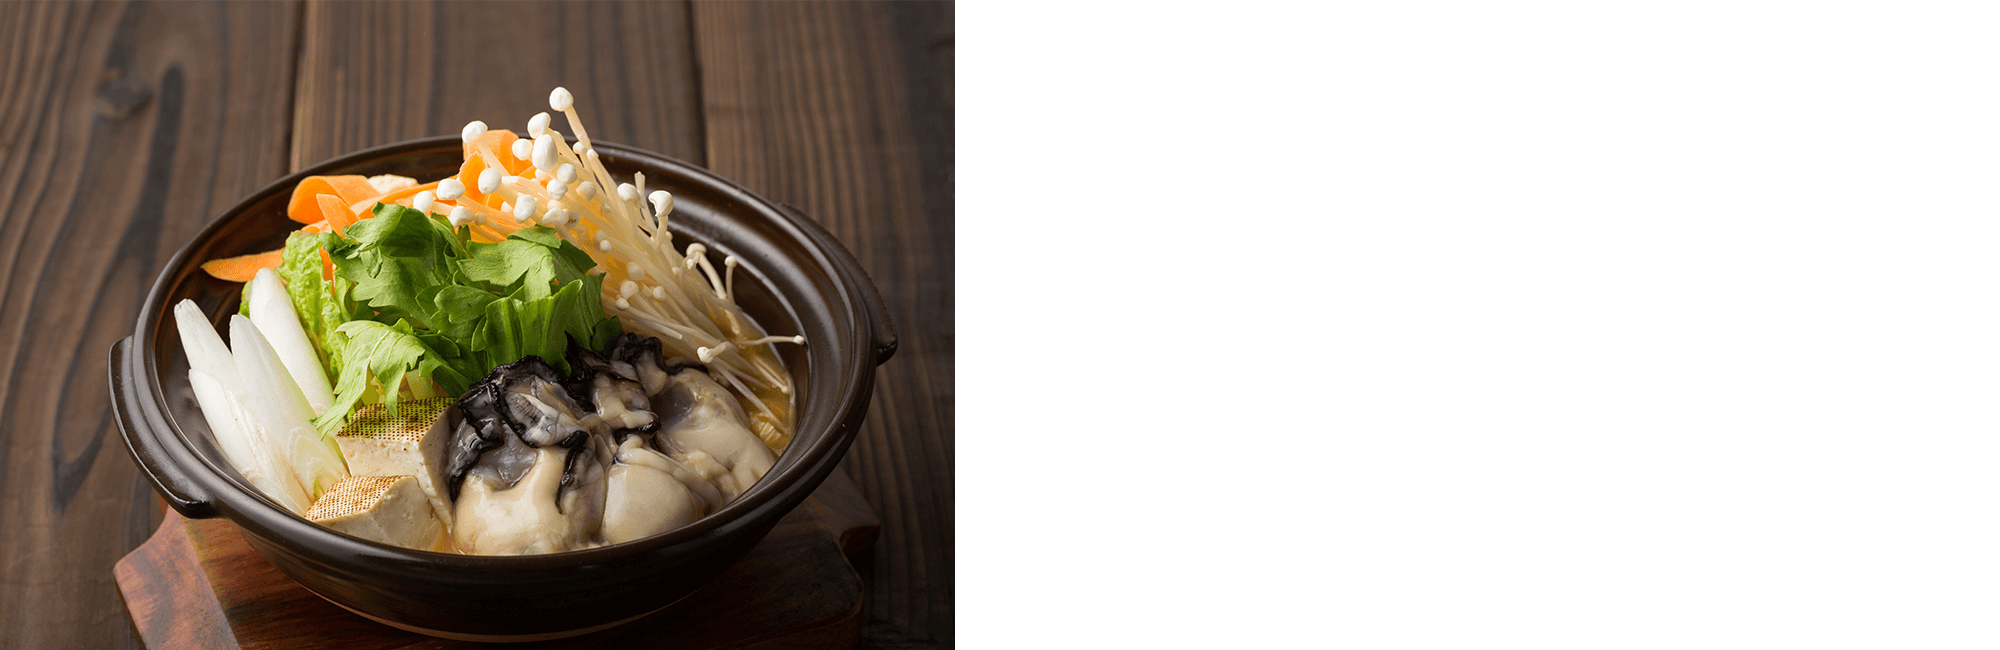 広島の郷土料理 牡蠣の土手鍋